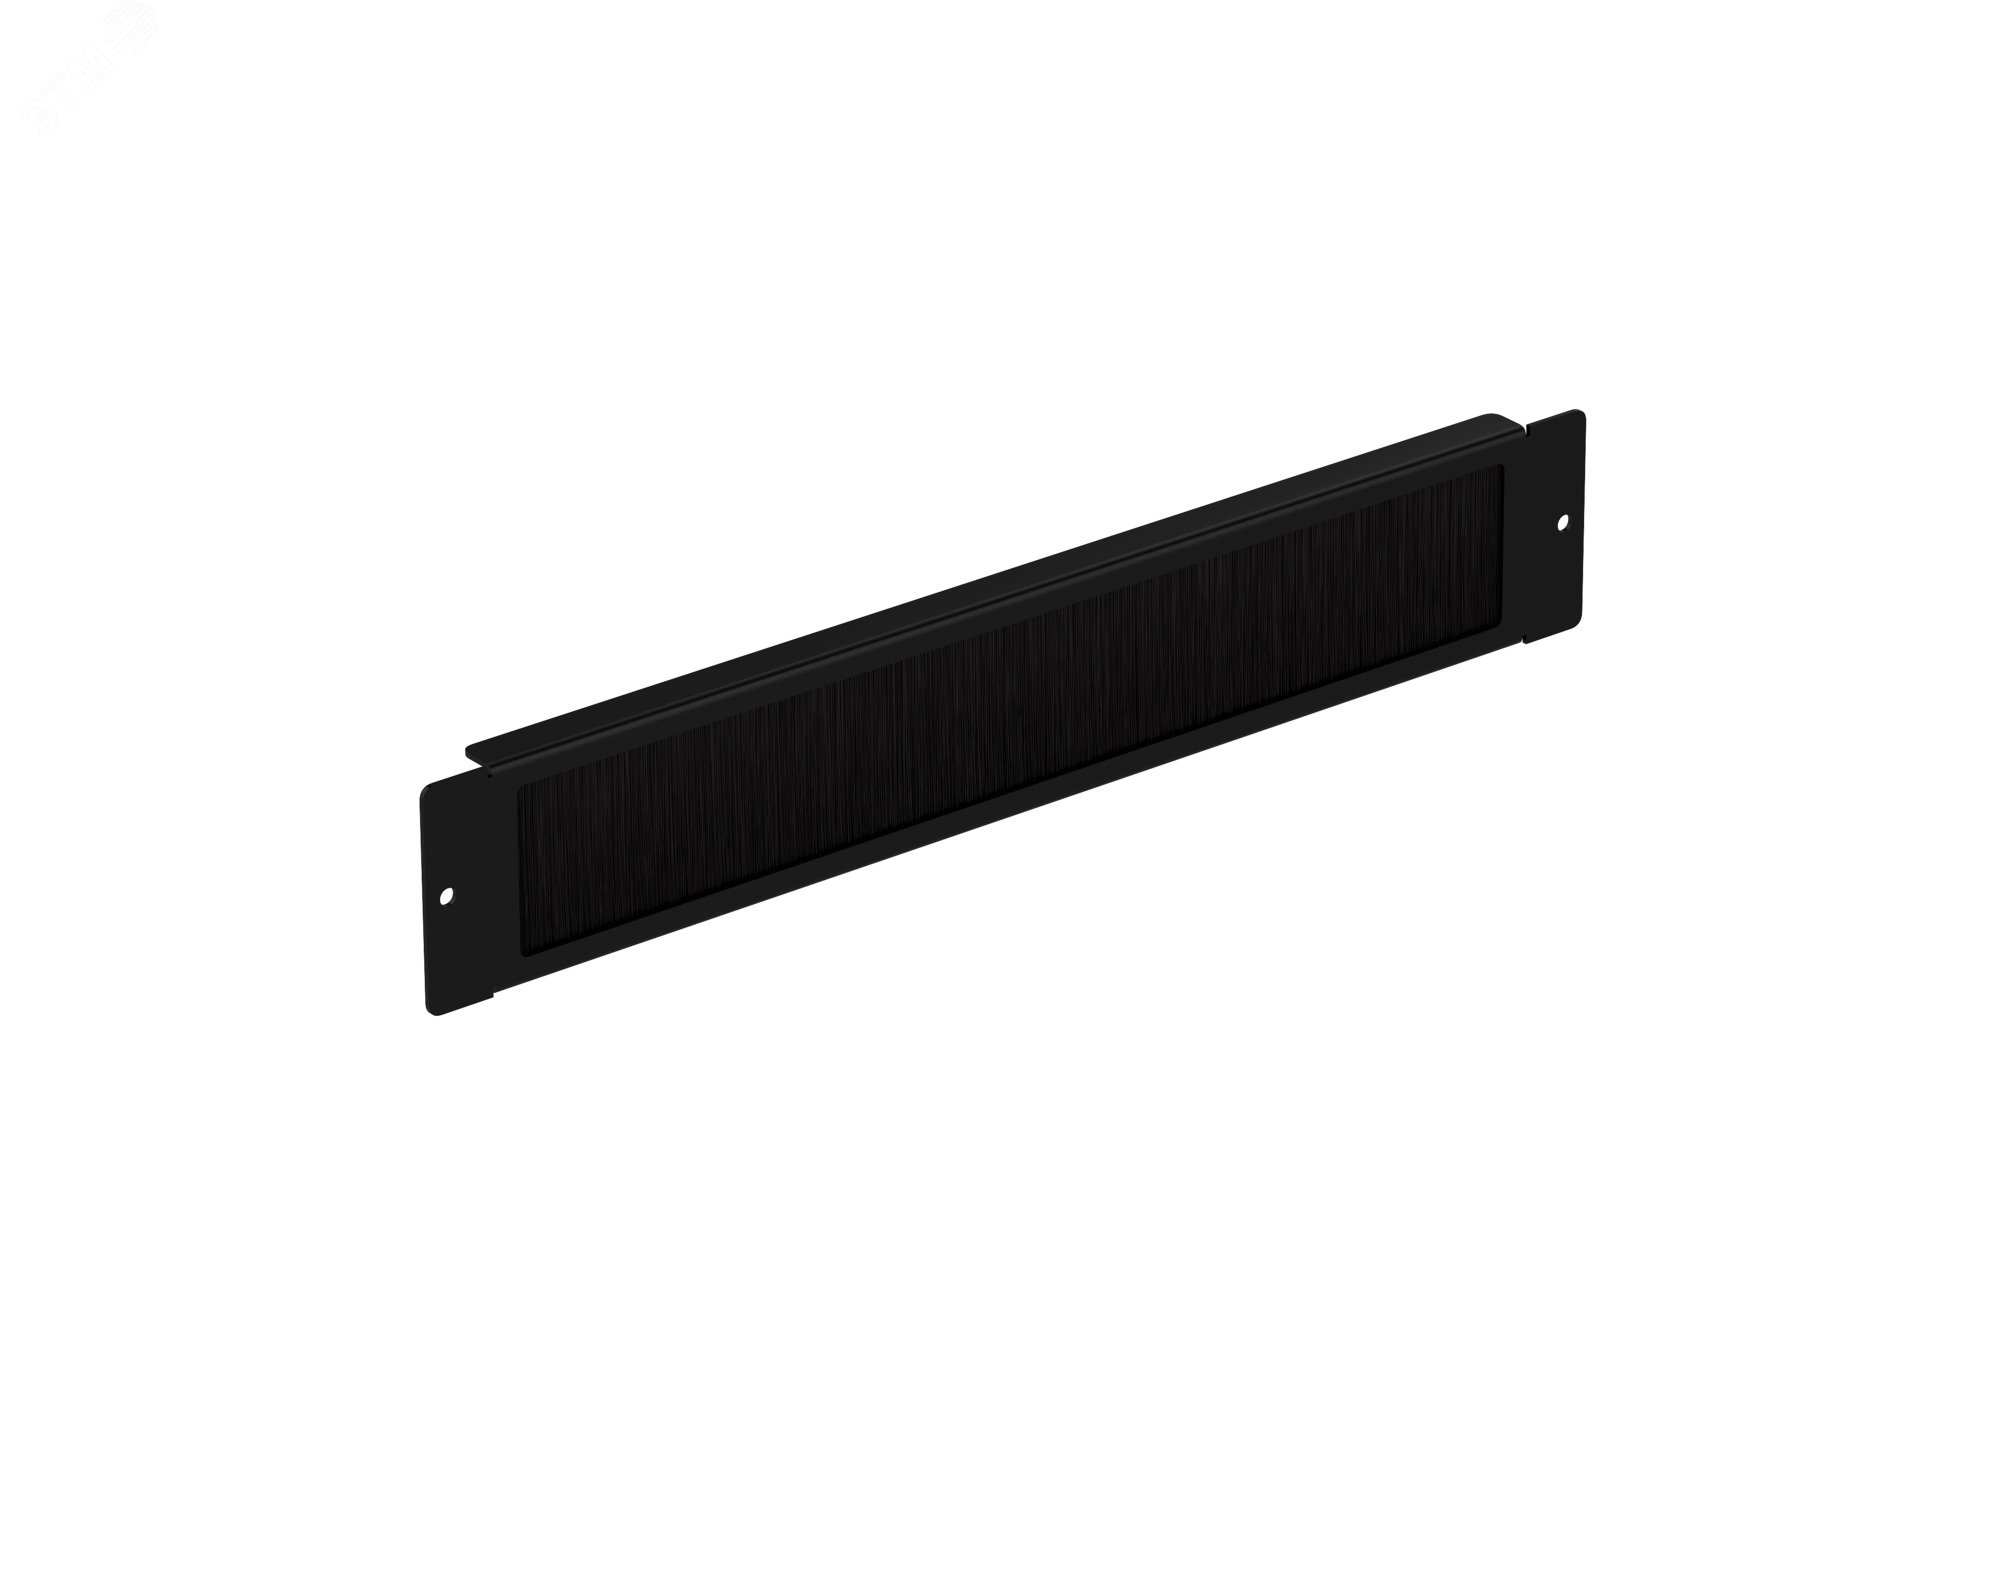 Ввод щеточный кабельный универсальный для настенных шкафов серии WP и напольных шкафов серии SL. MR. цвет черный (RAL 9004) BE 0501.900 SYSMATRIX - превью 2